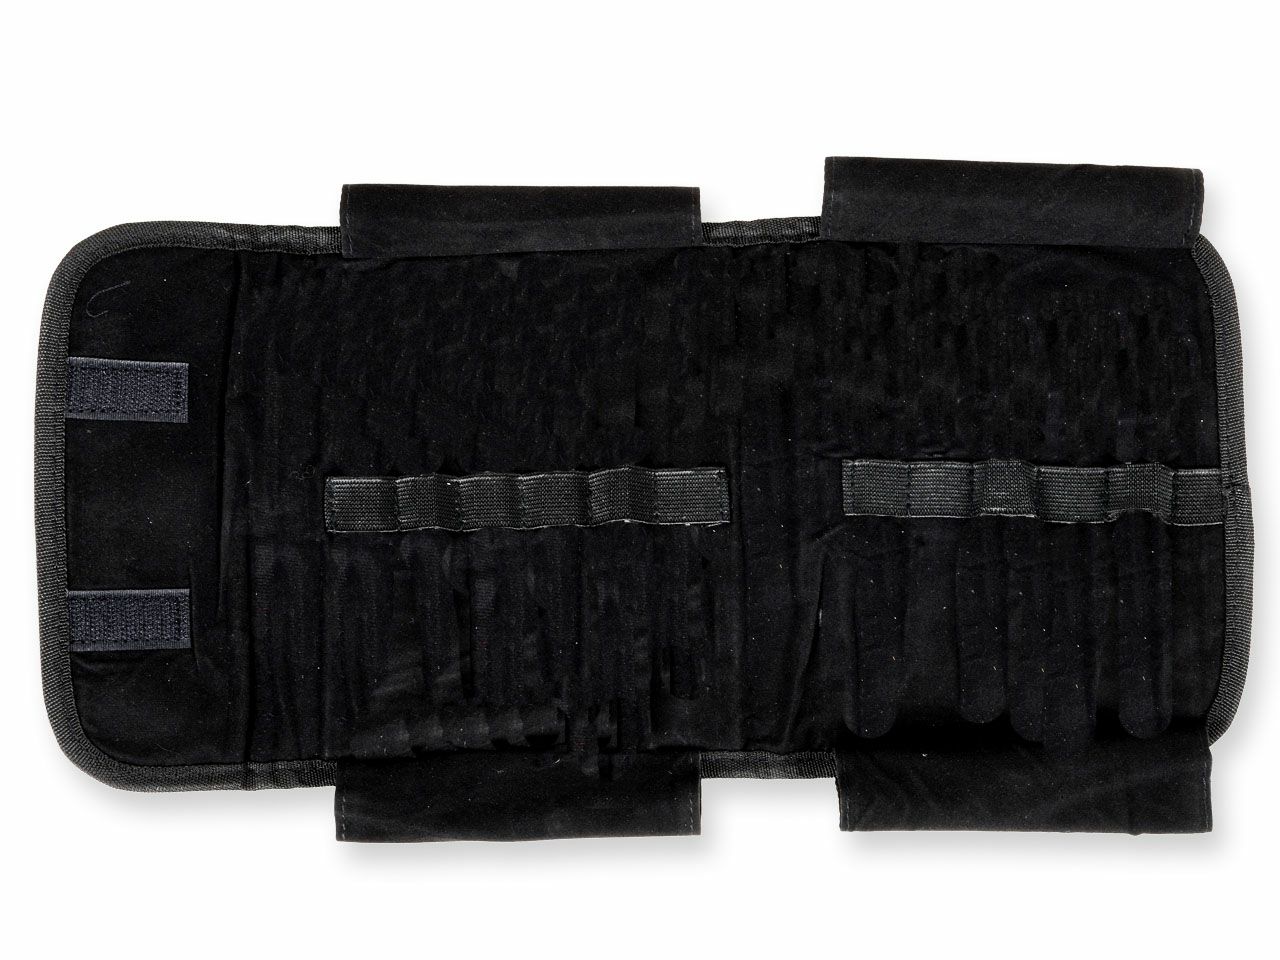 instrument-bag-black-nylon-26650_1.jpg